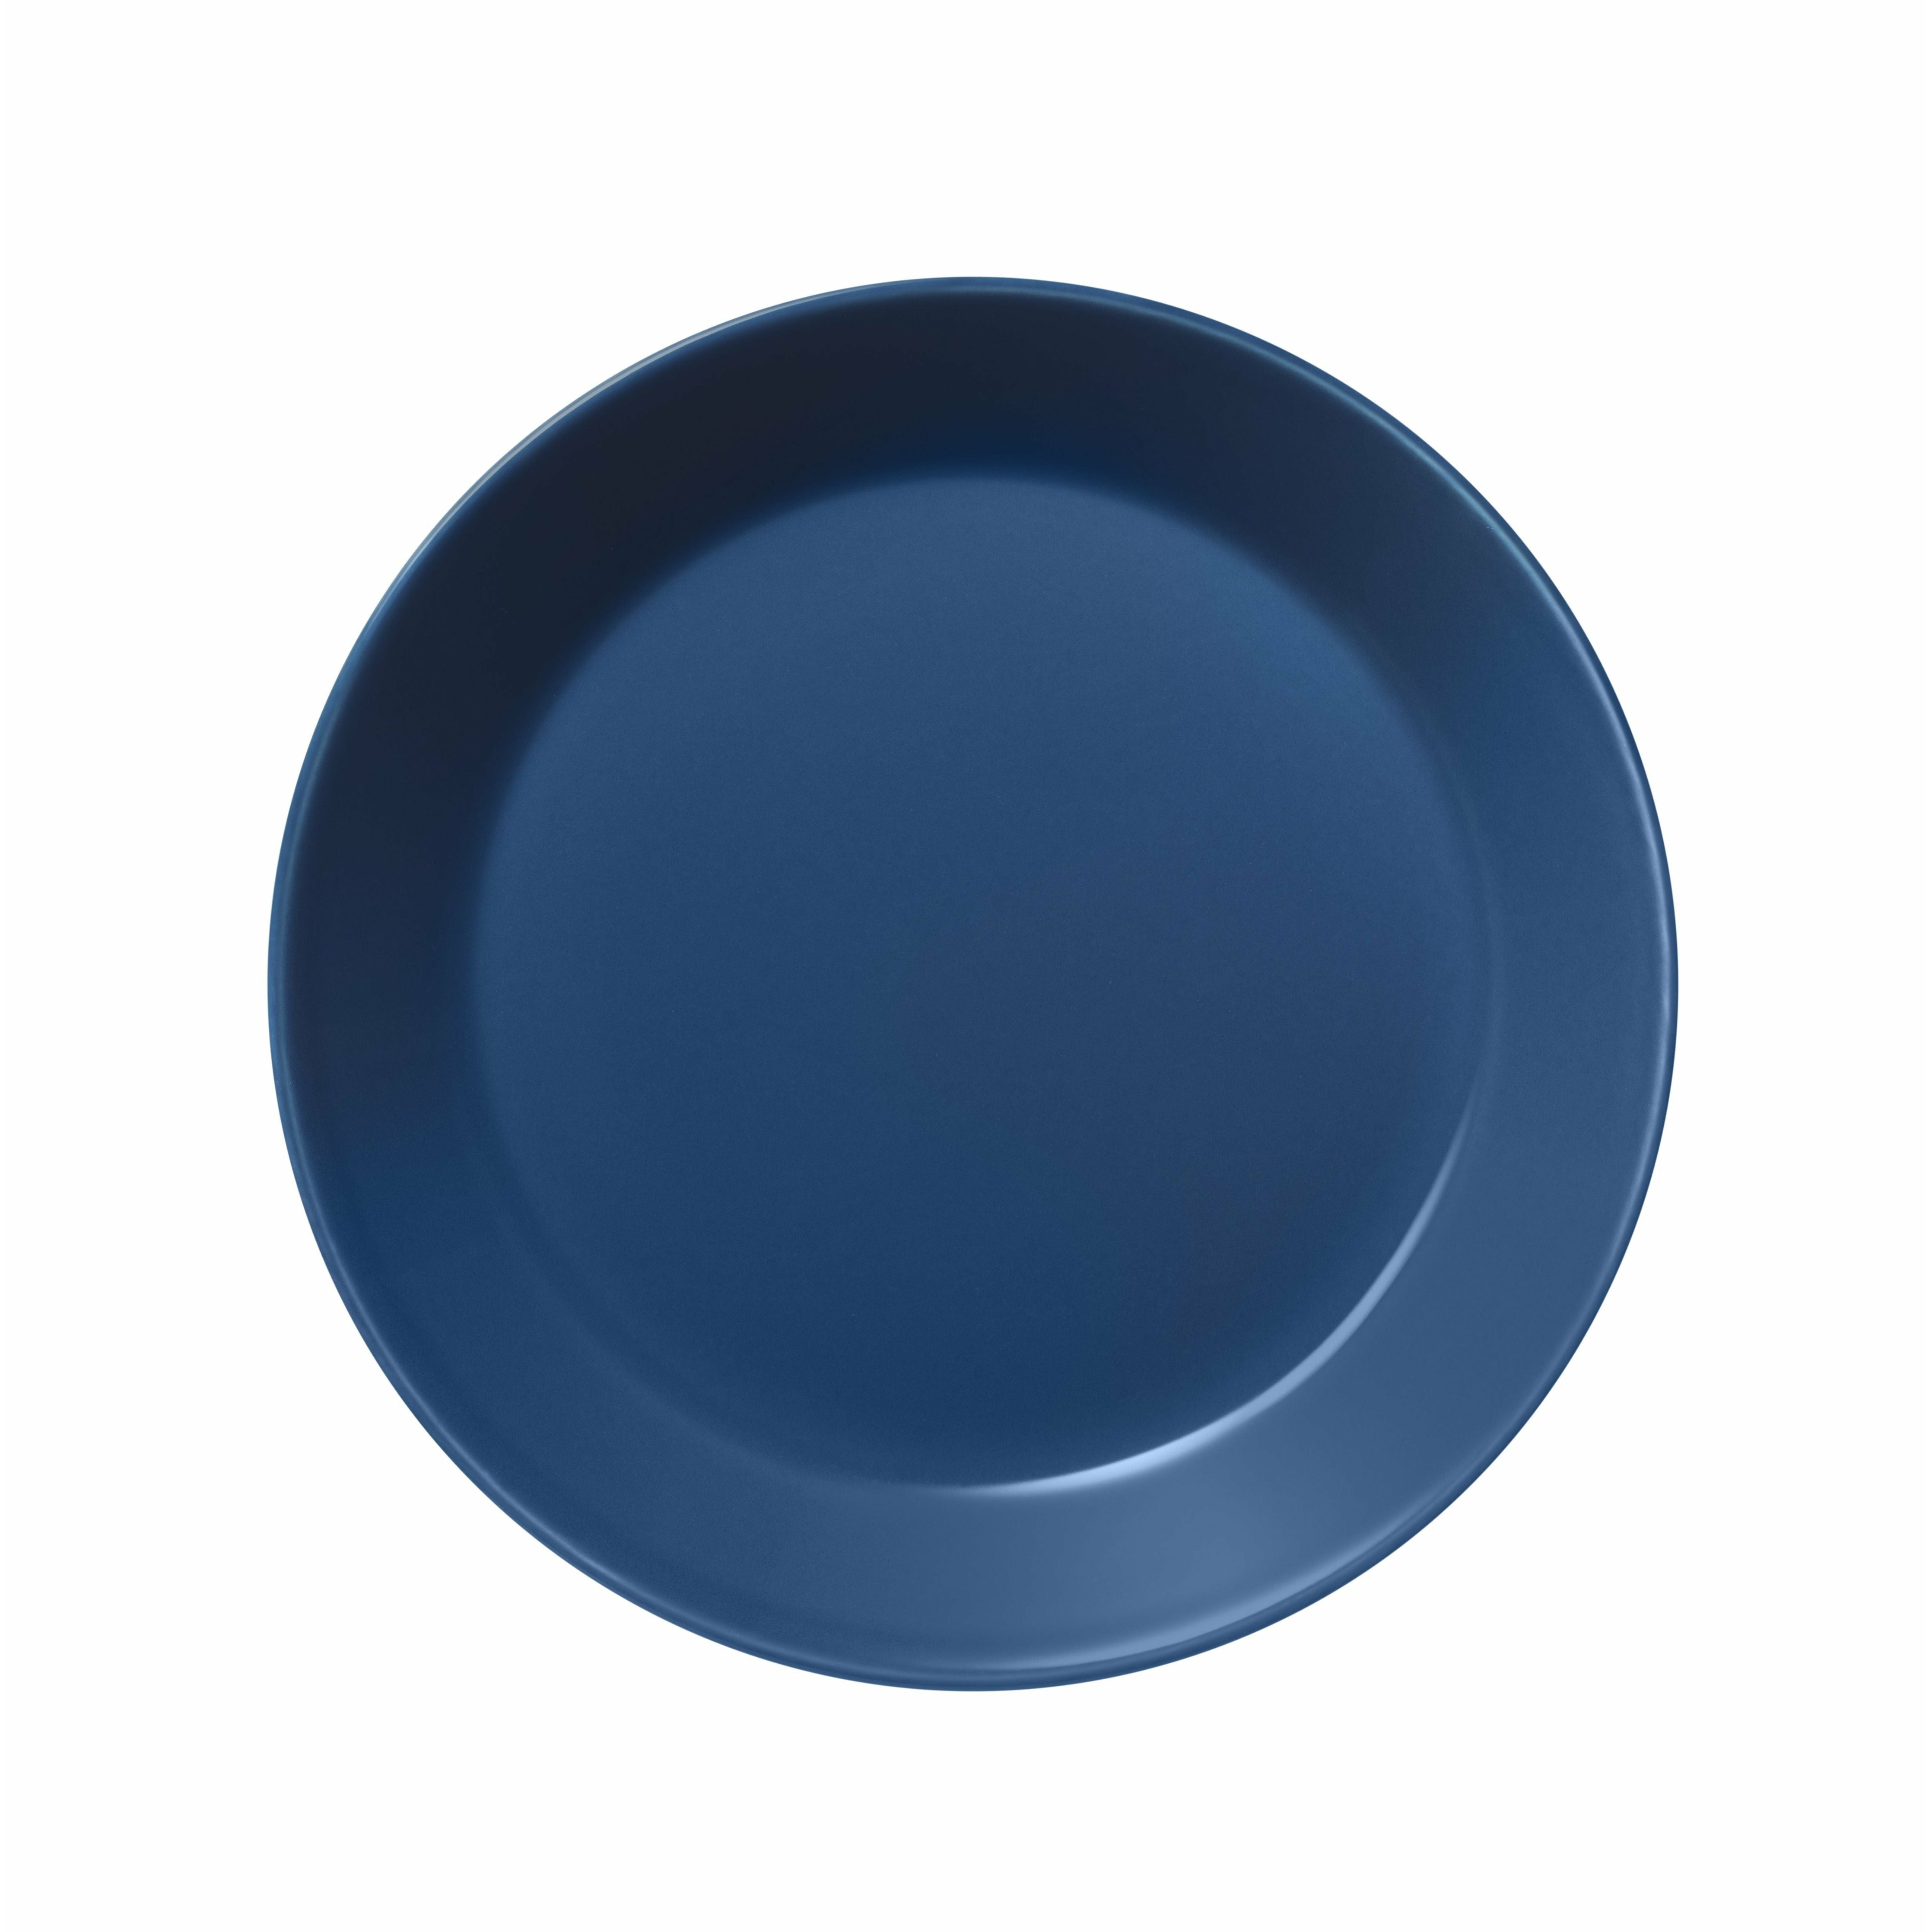 Iittala Teema plade 17 cm, vintage blå